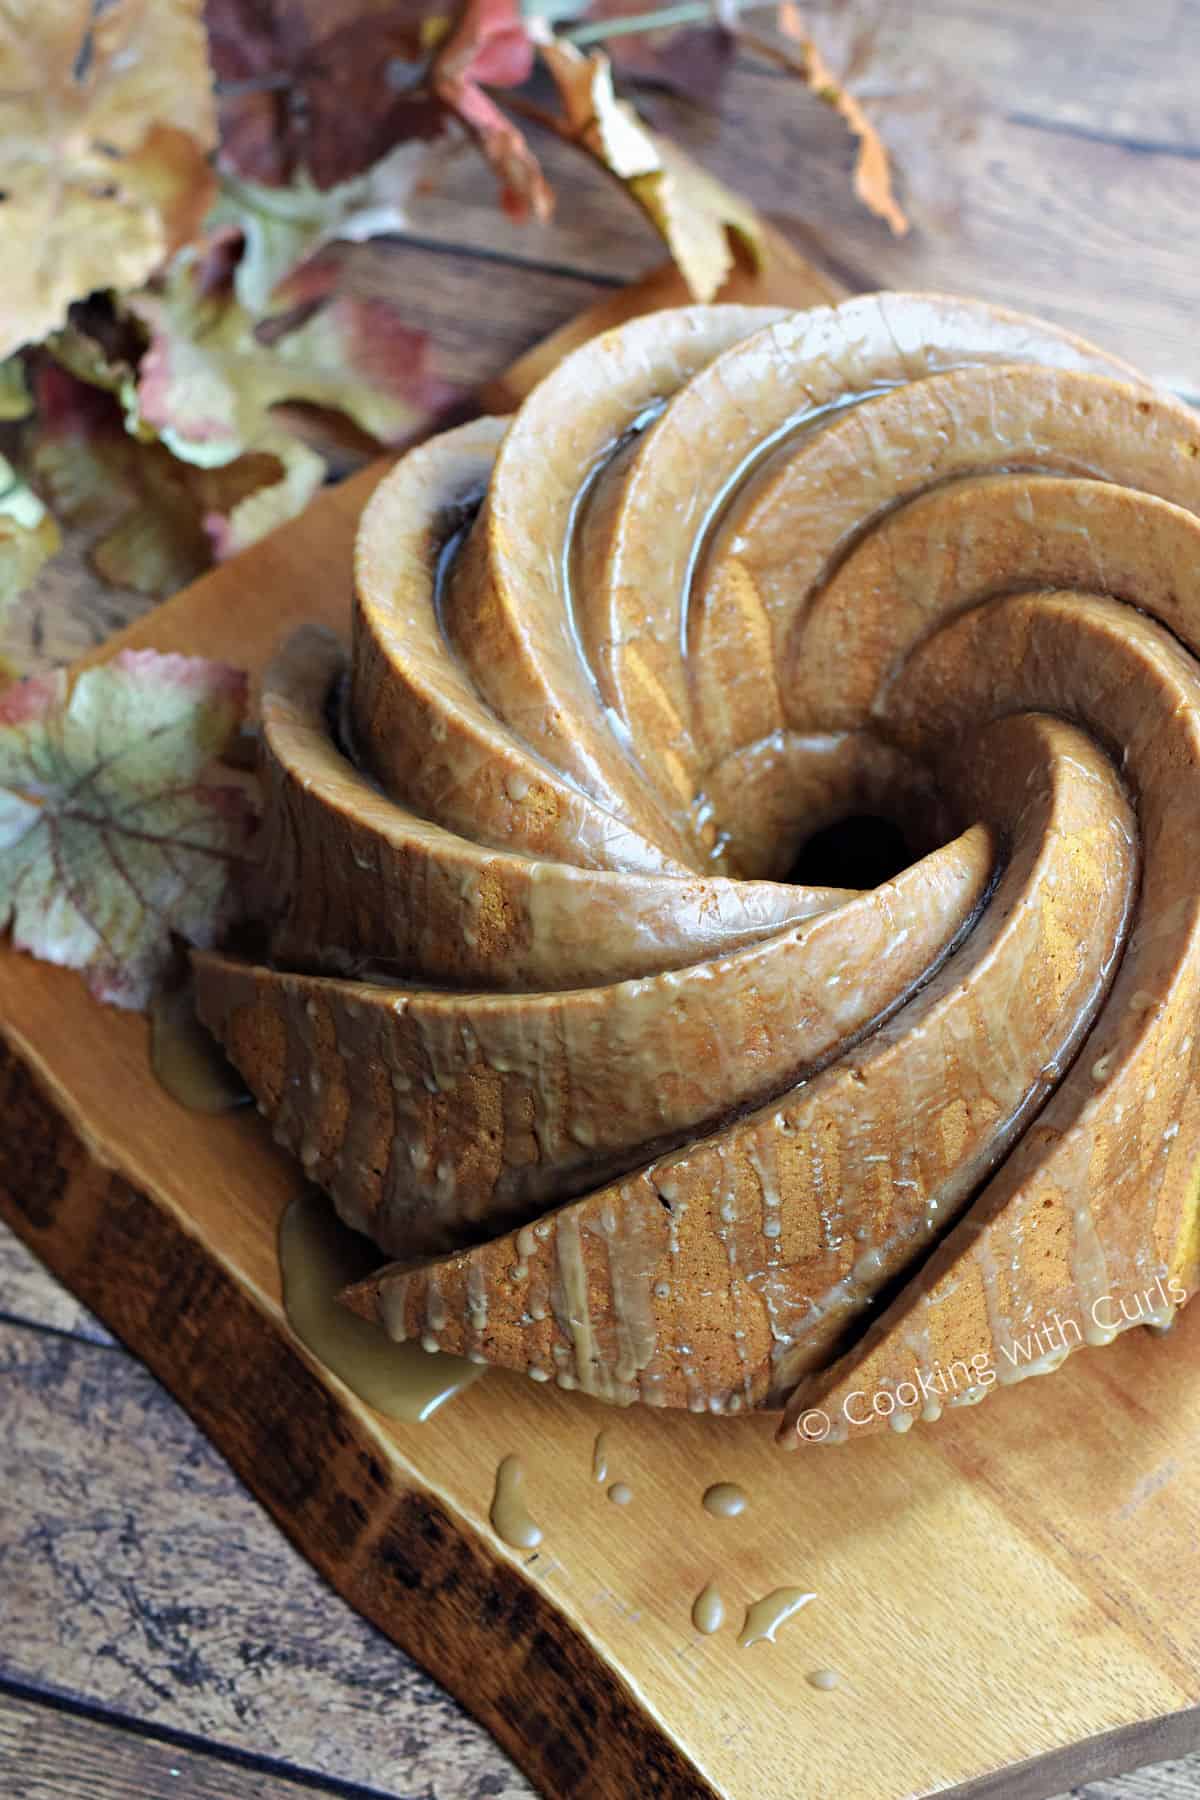 A swirl patterned bundt cake on a wood serving board.